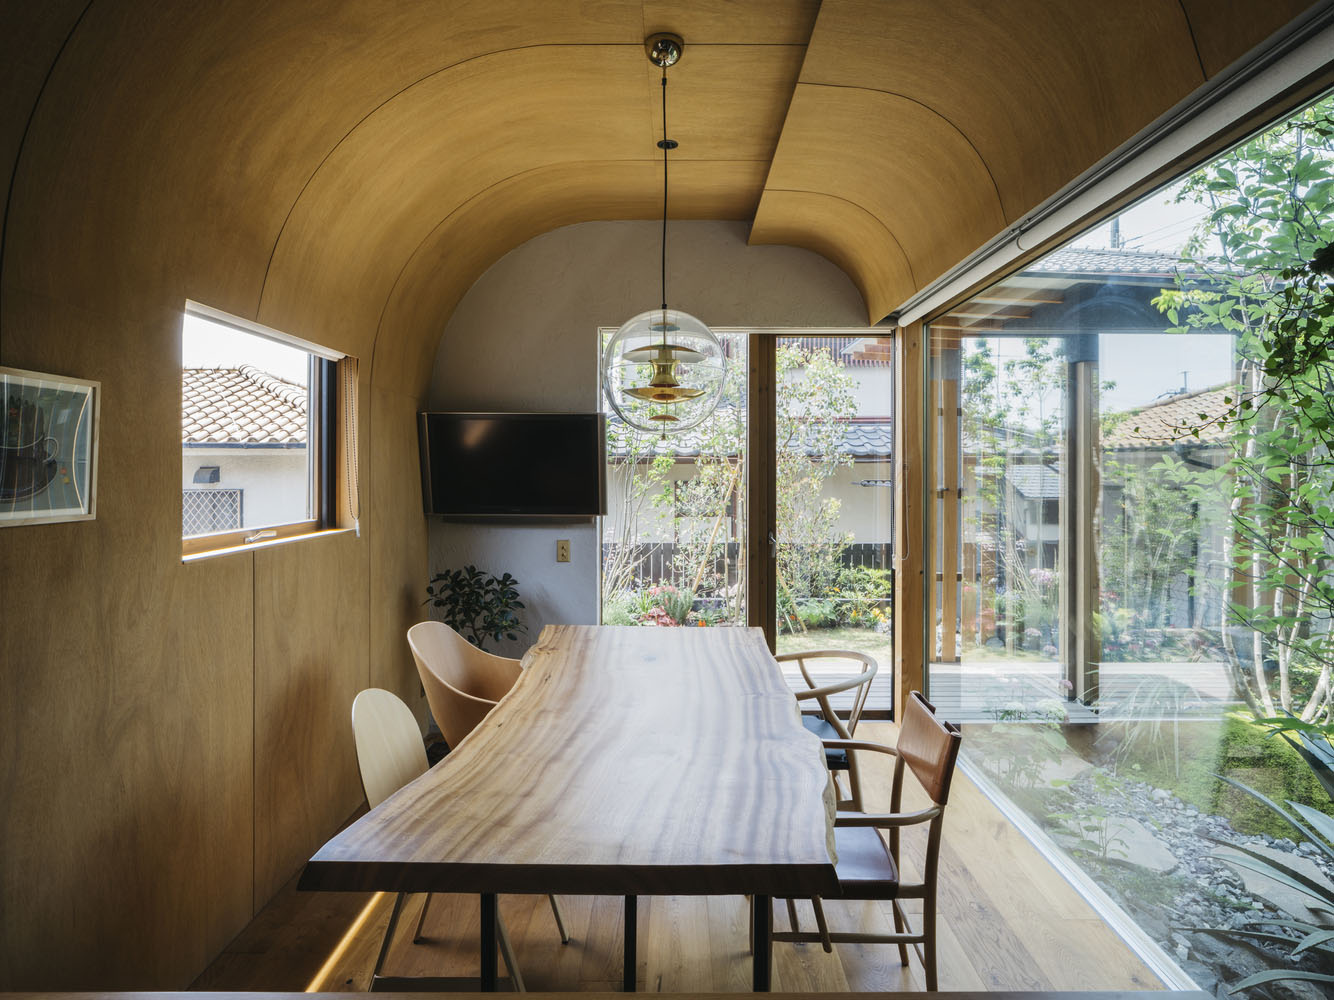 日式住宅设计,住宅设计案例,Atsushi Kawanishi Architects,日本,130㎡,原木风,日式侘寂庭院住宅,侘寂